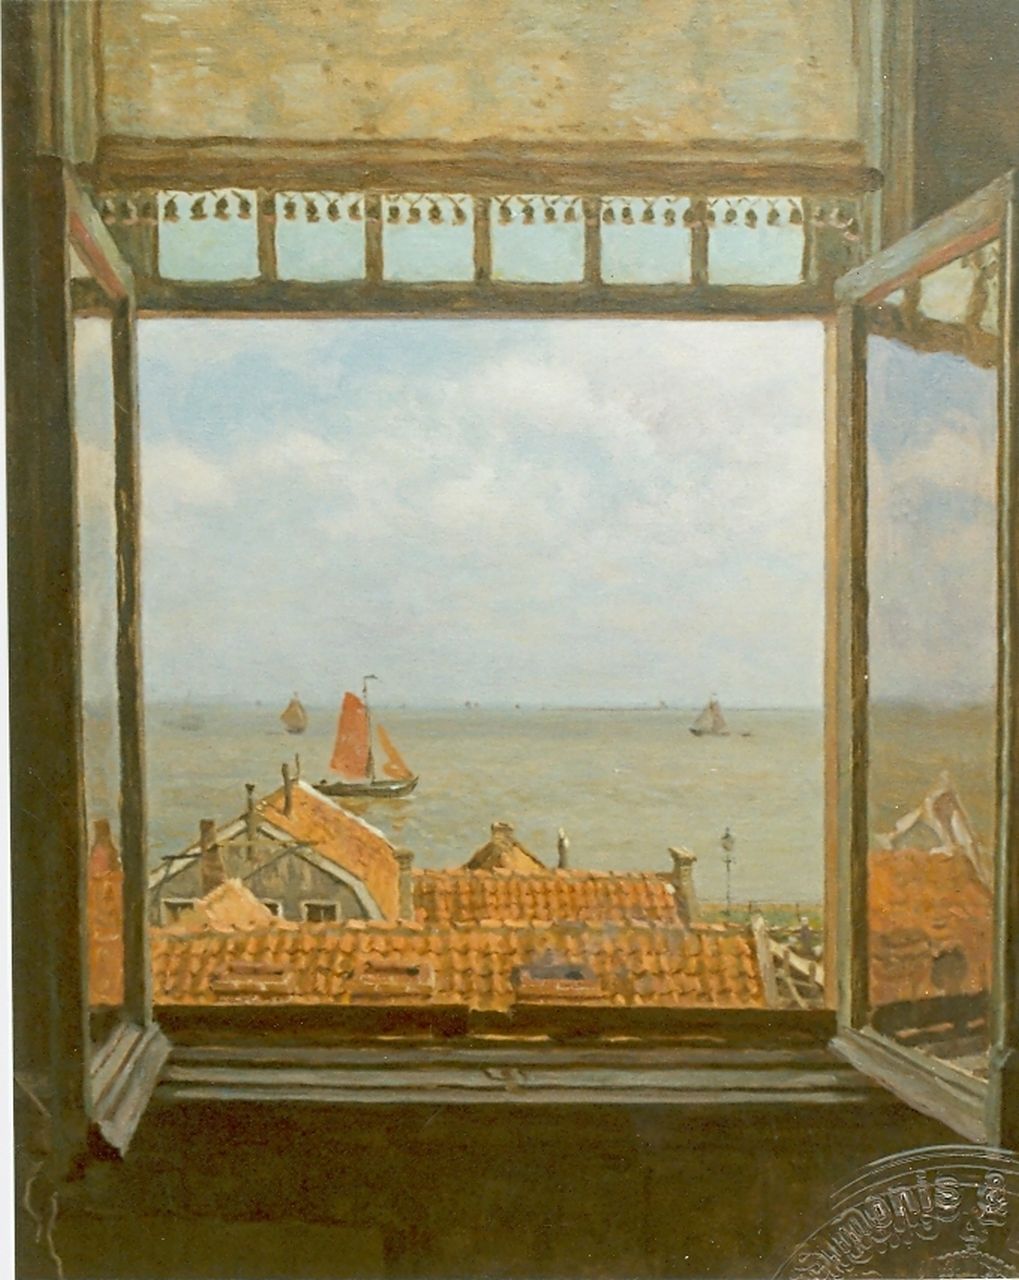 Tholen W.B.  | Willem Bastiaan Tholen, View of the Zuiderzee from Hotel van Diepen, Volendam, Öl auf Leinwand 70,0 x 58,5 cm, signed l.r.